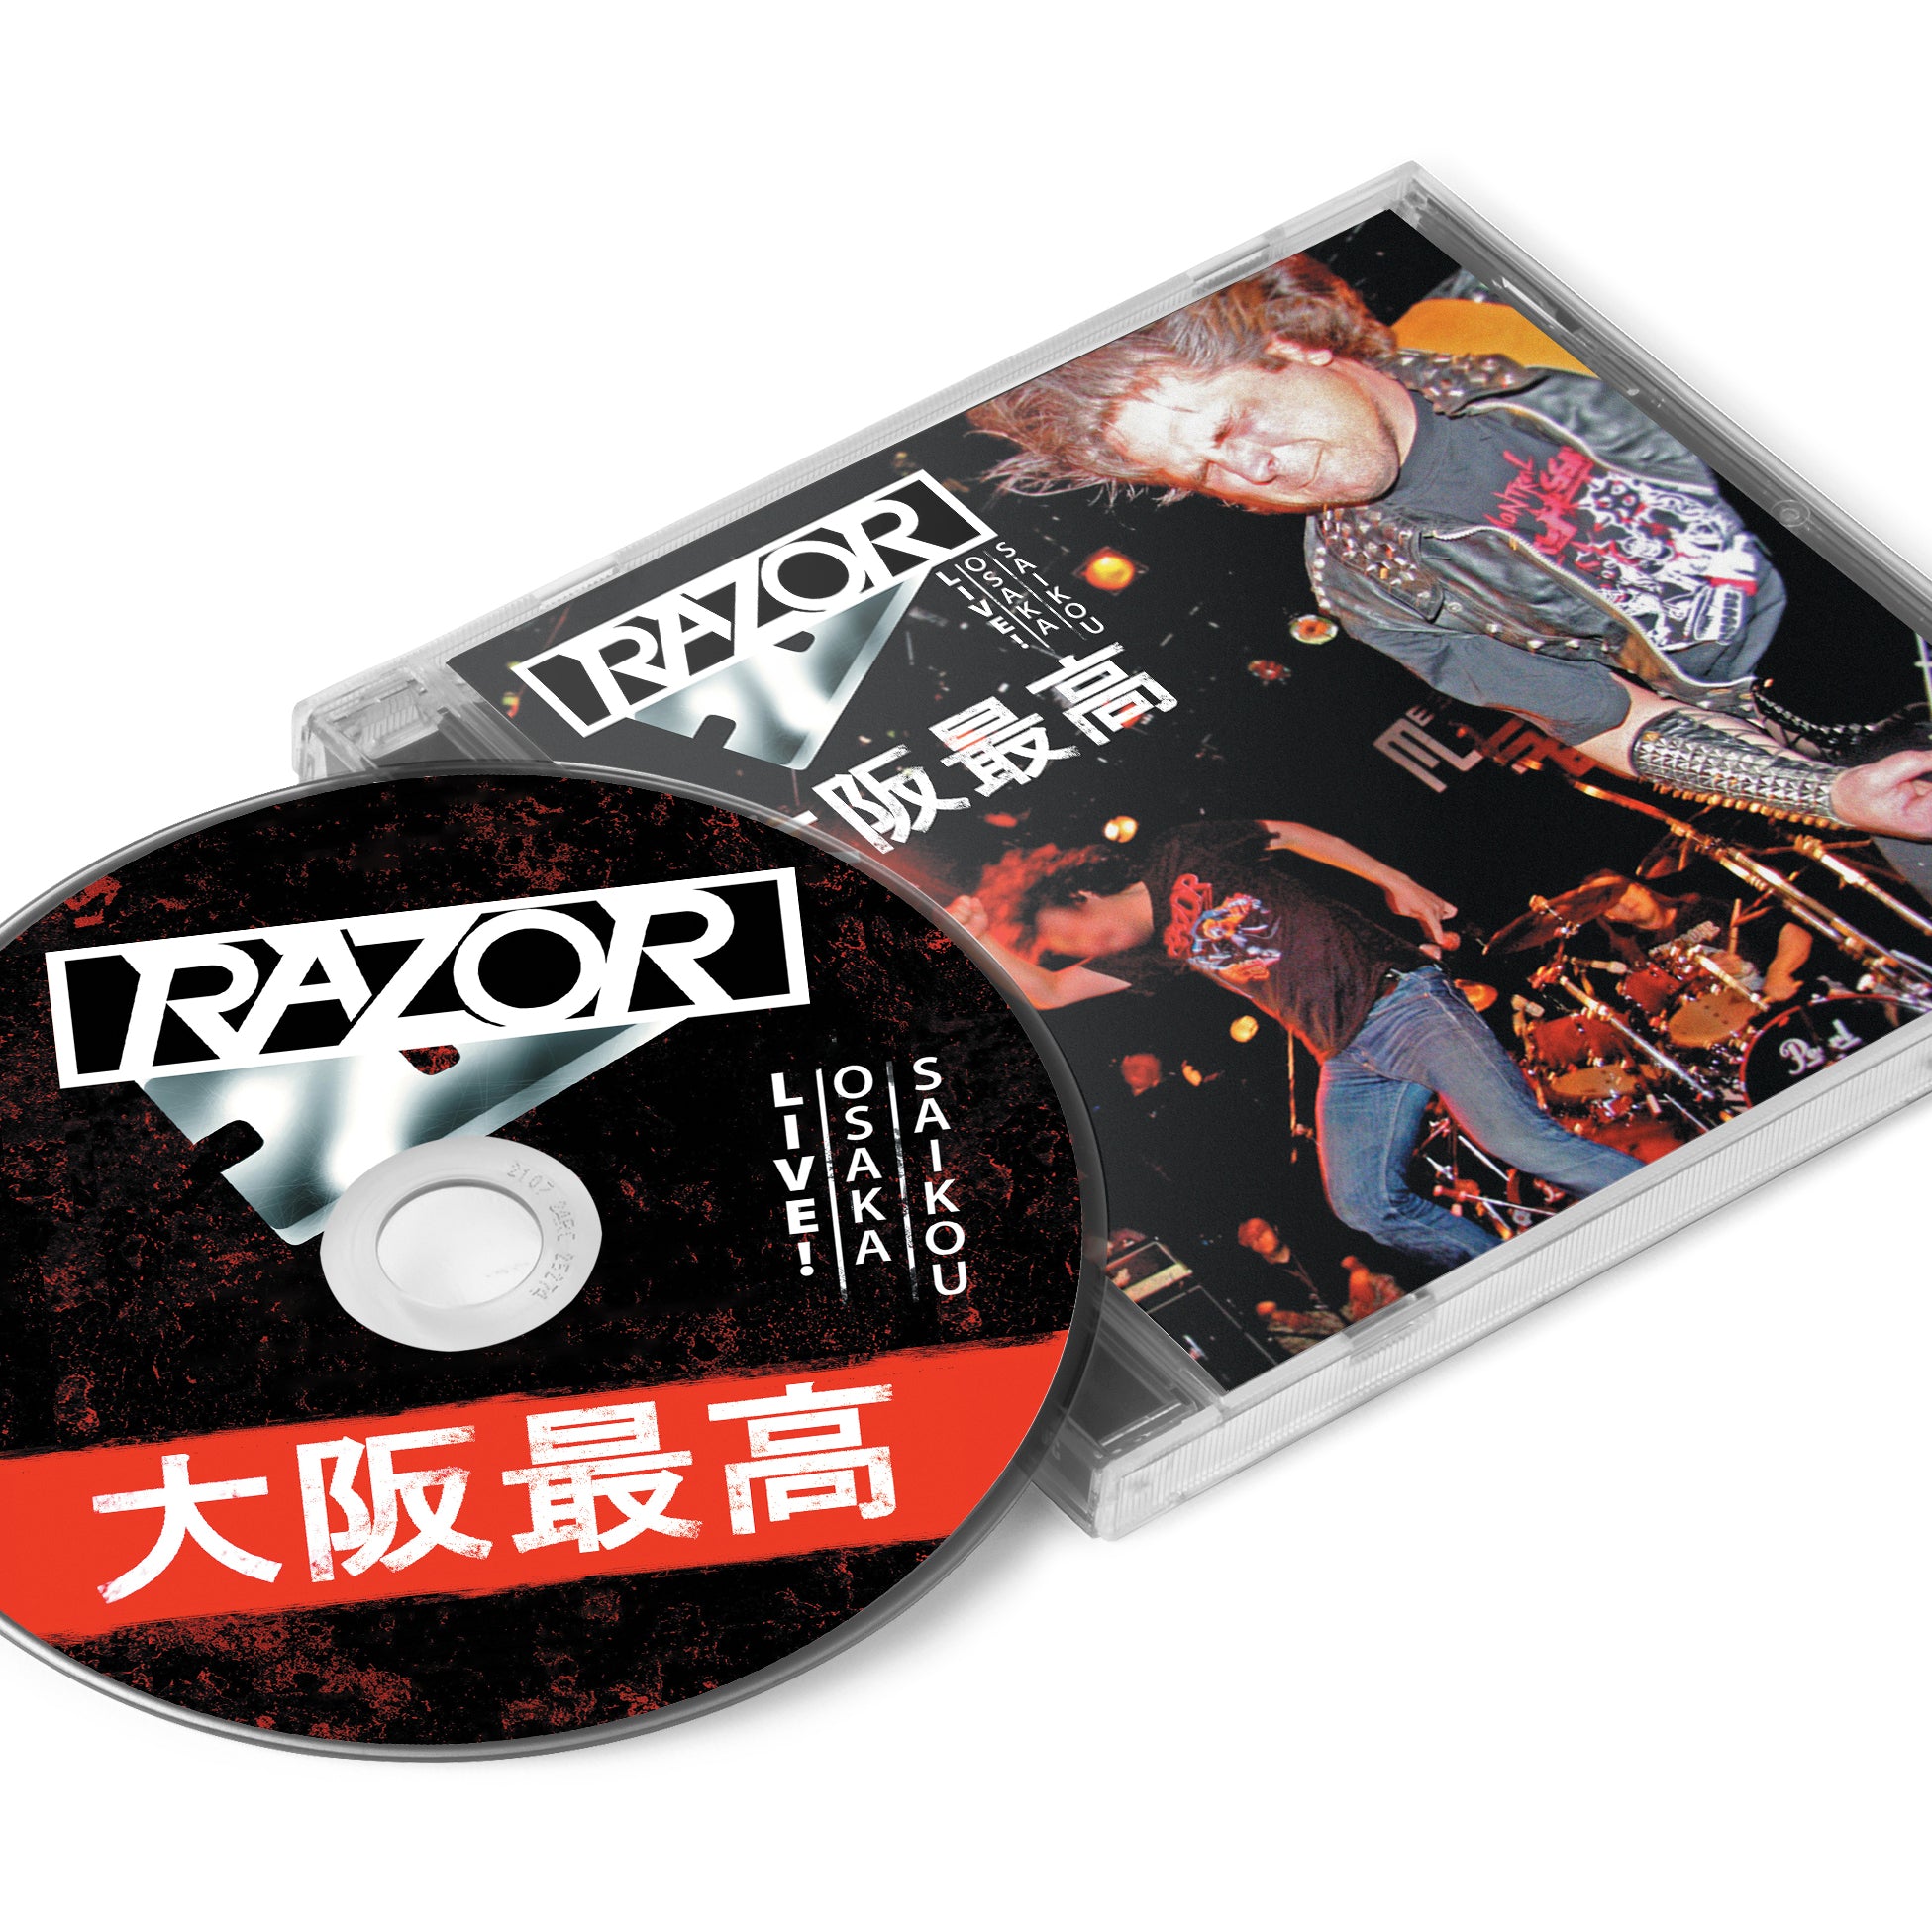 Razor "Live! Osaka Saikou 大阪最高 Reissue" CD